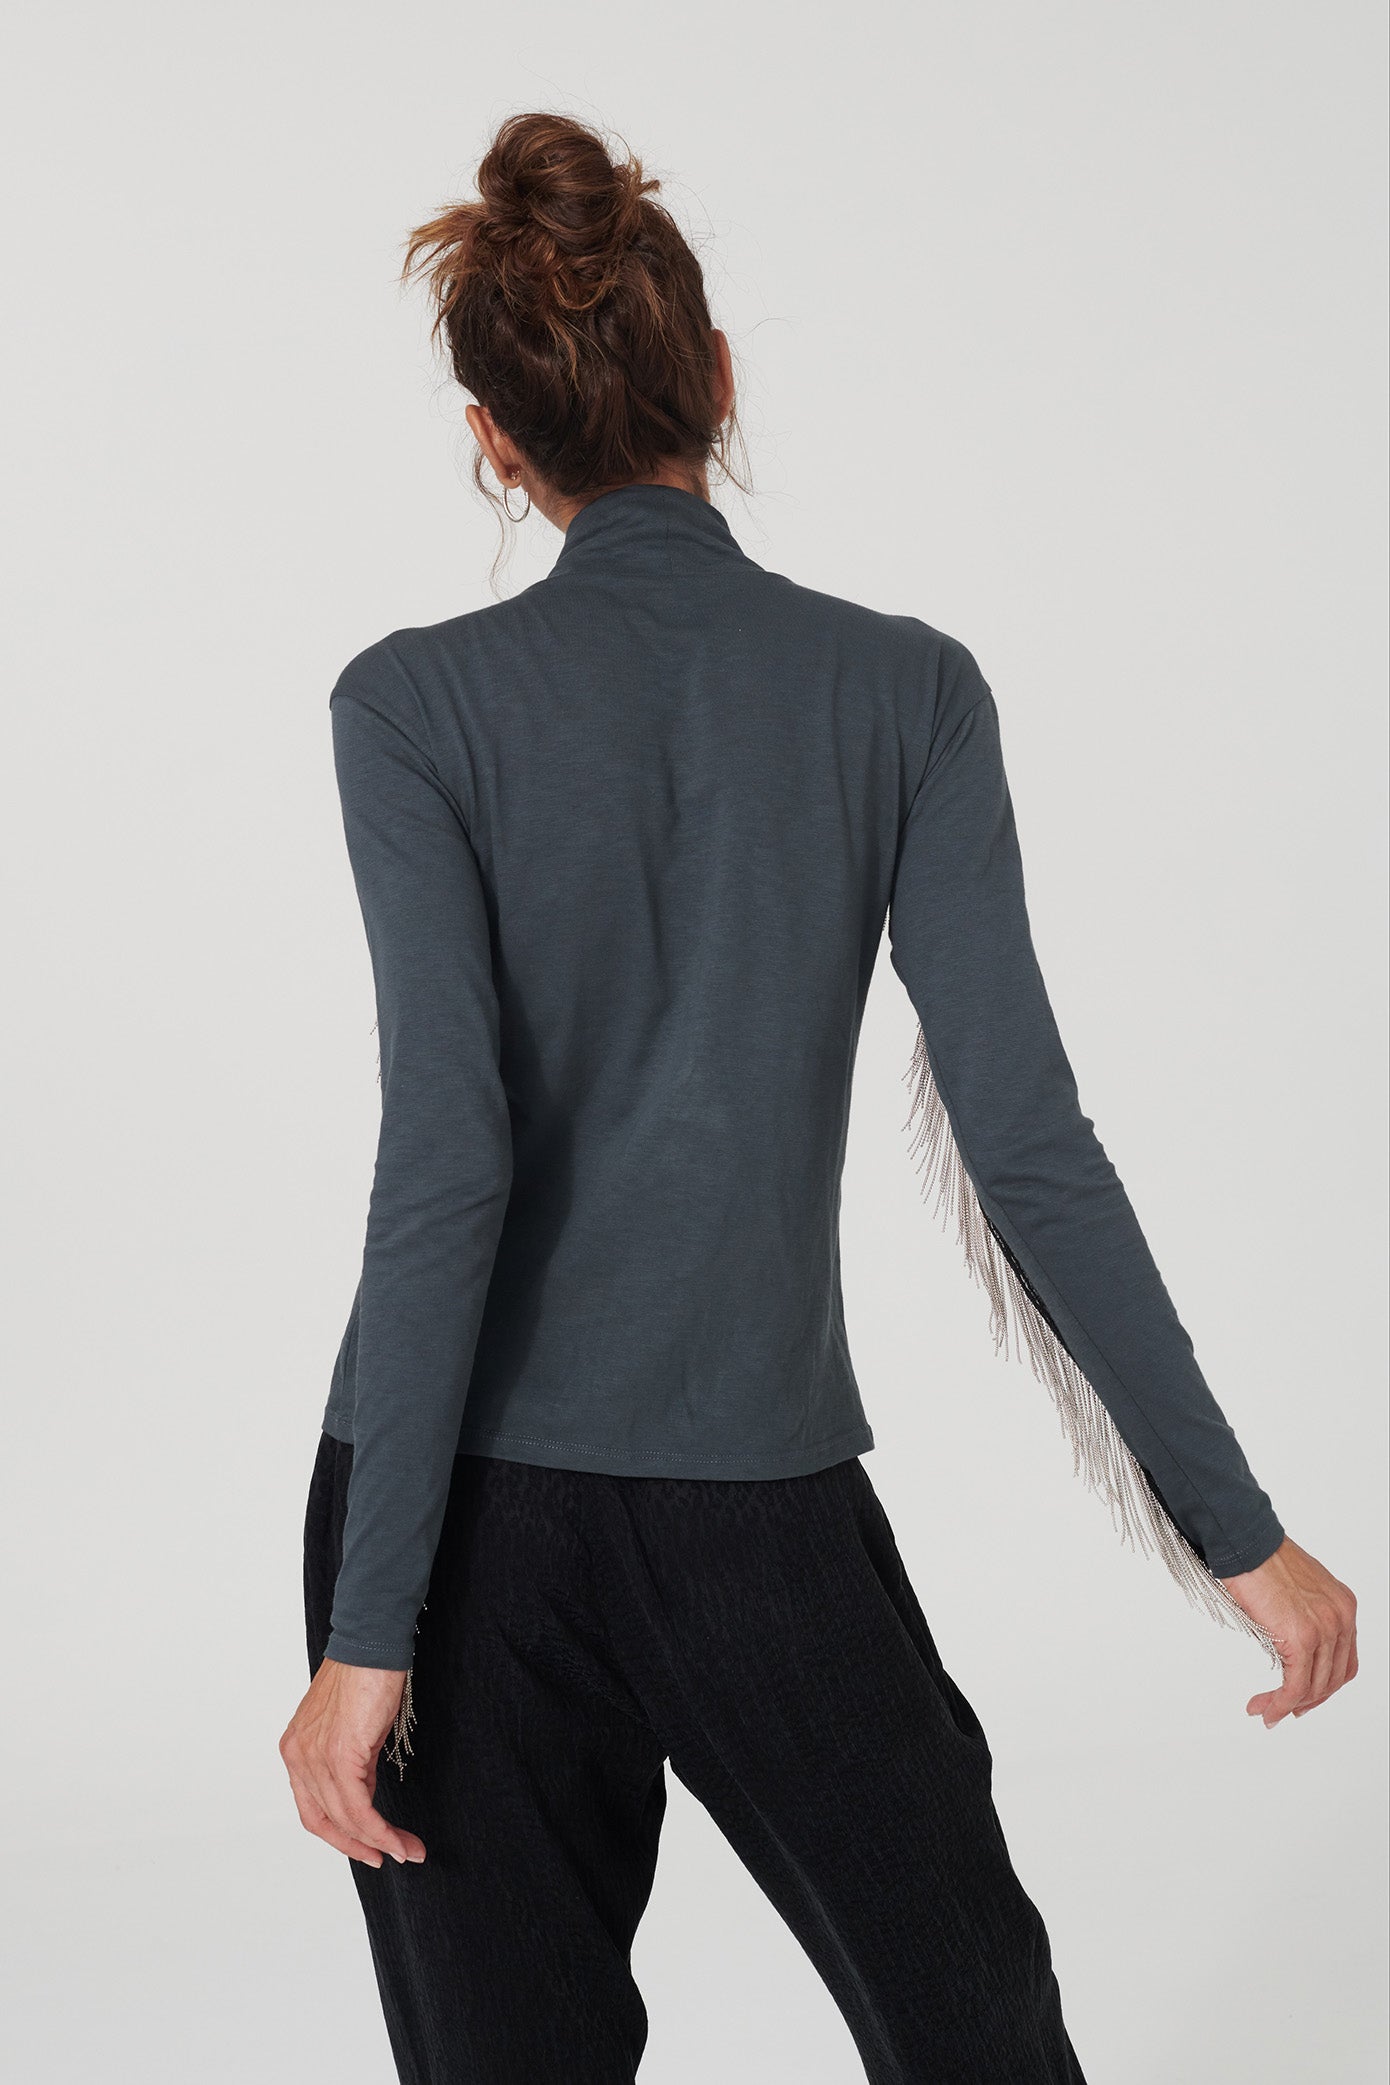 Longsleeve-Shirt ZEDKIN mit Metall-Kettchen in grau von LOVJOI aus Bio-Baumwolle